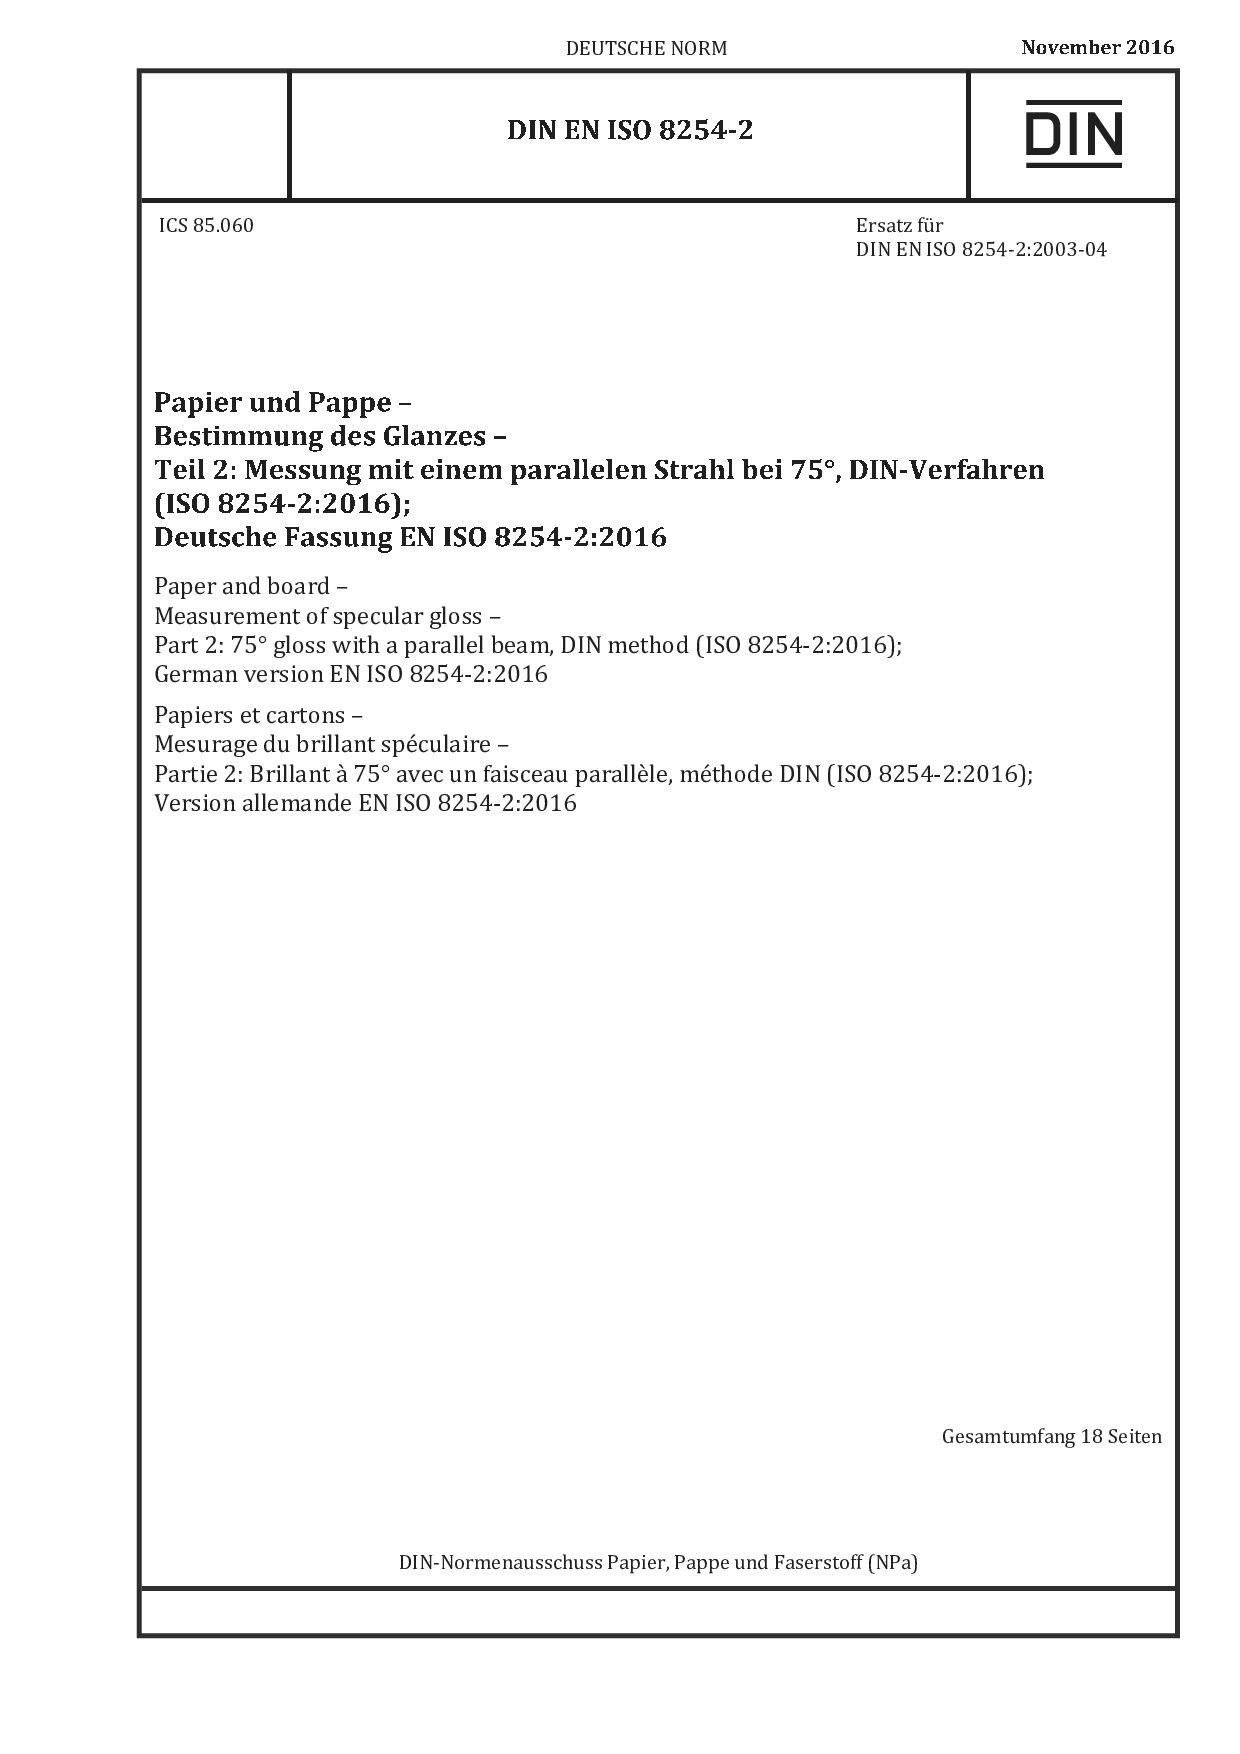 DIN EN ISO 8254-2:2016封面图